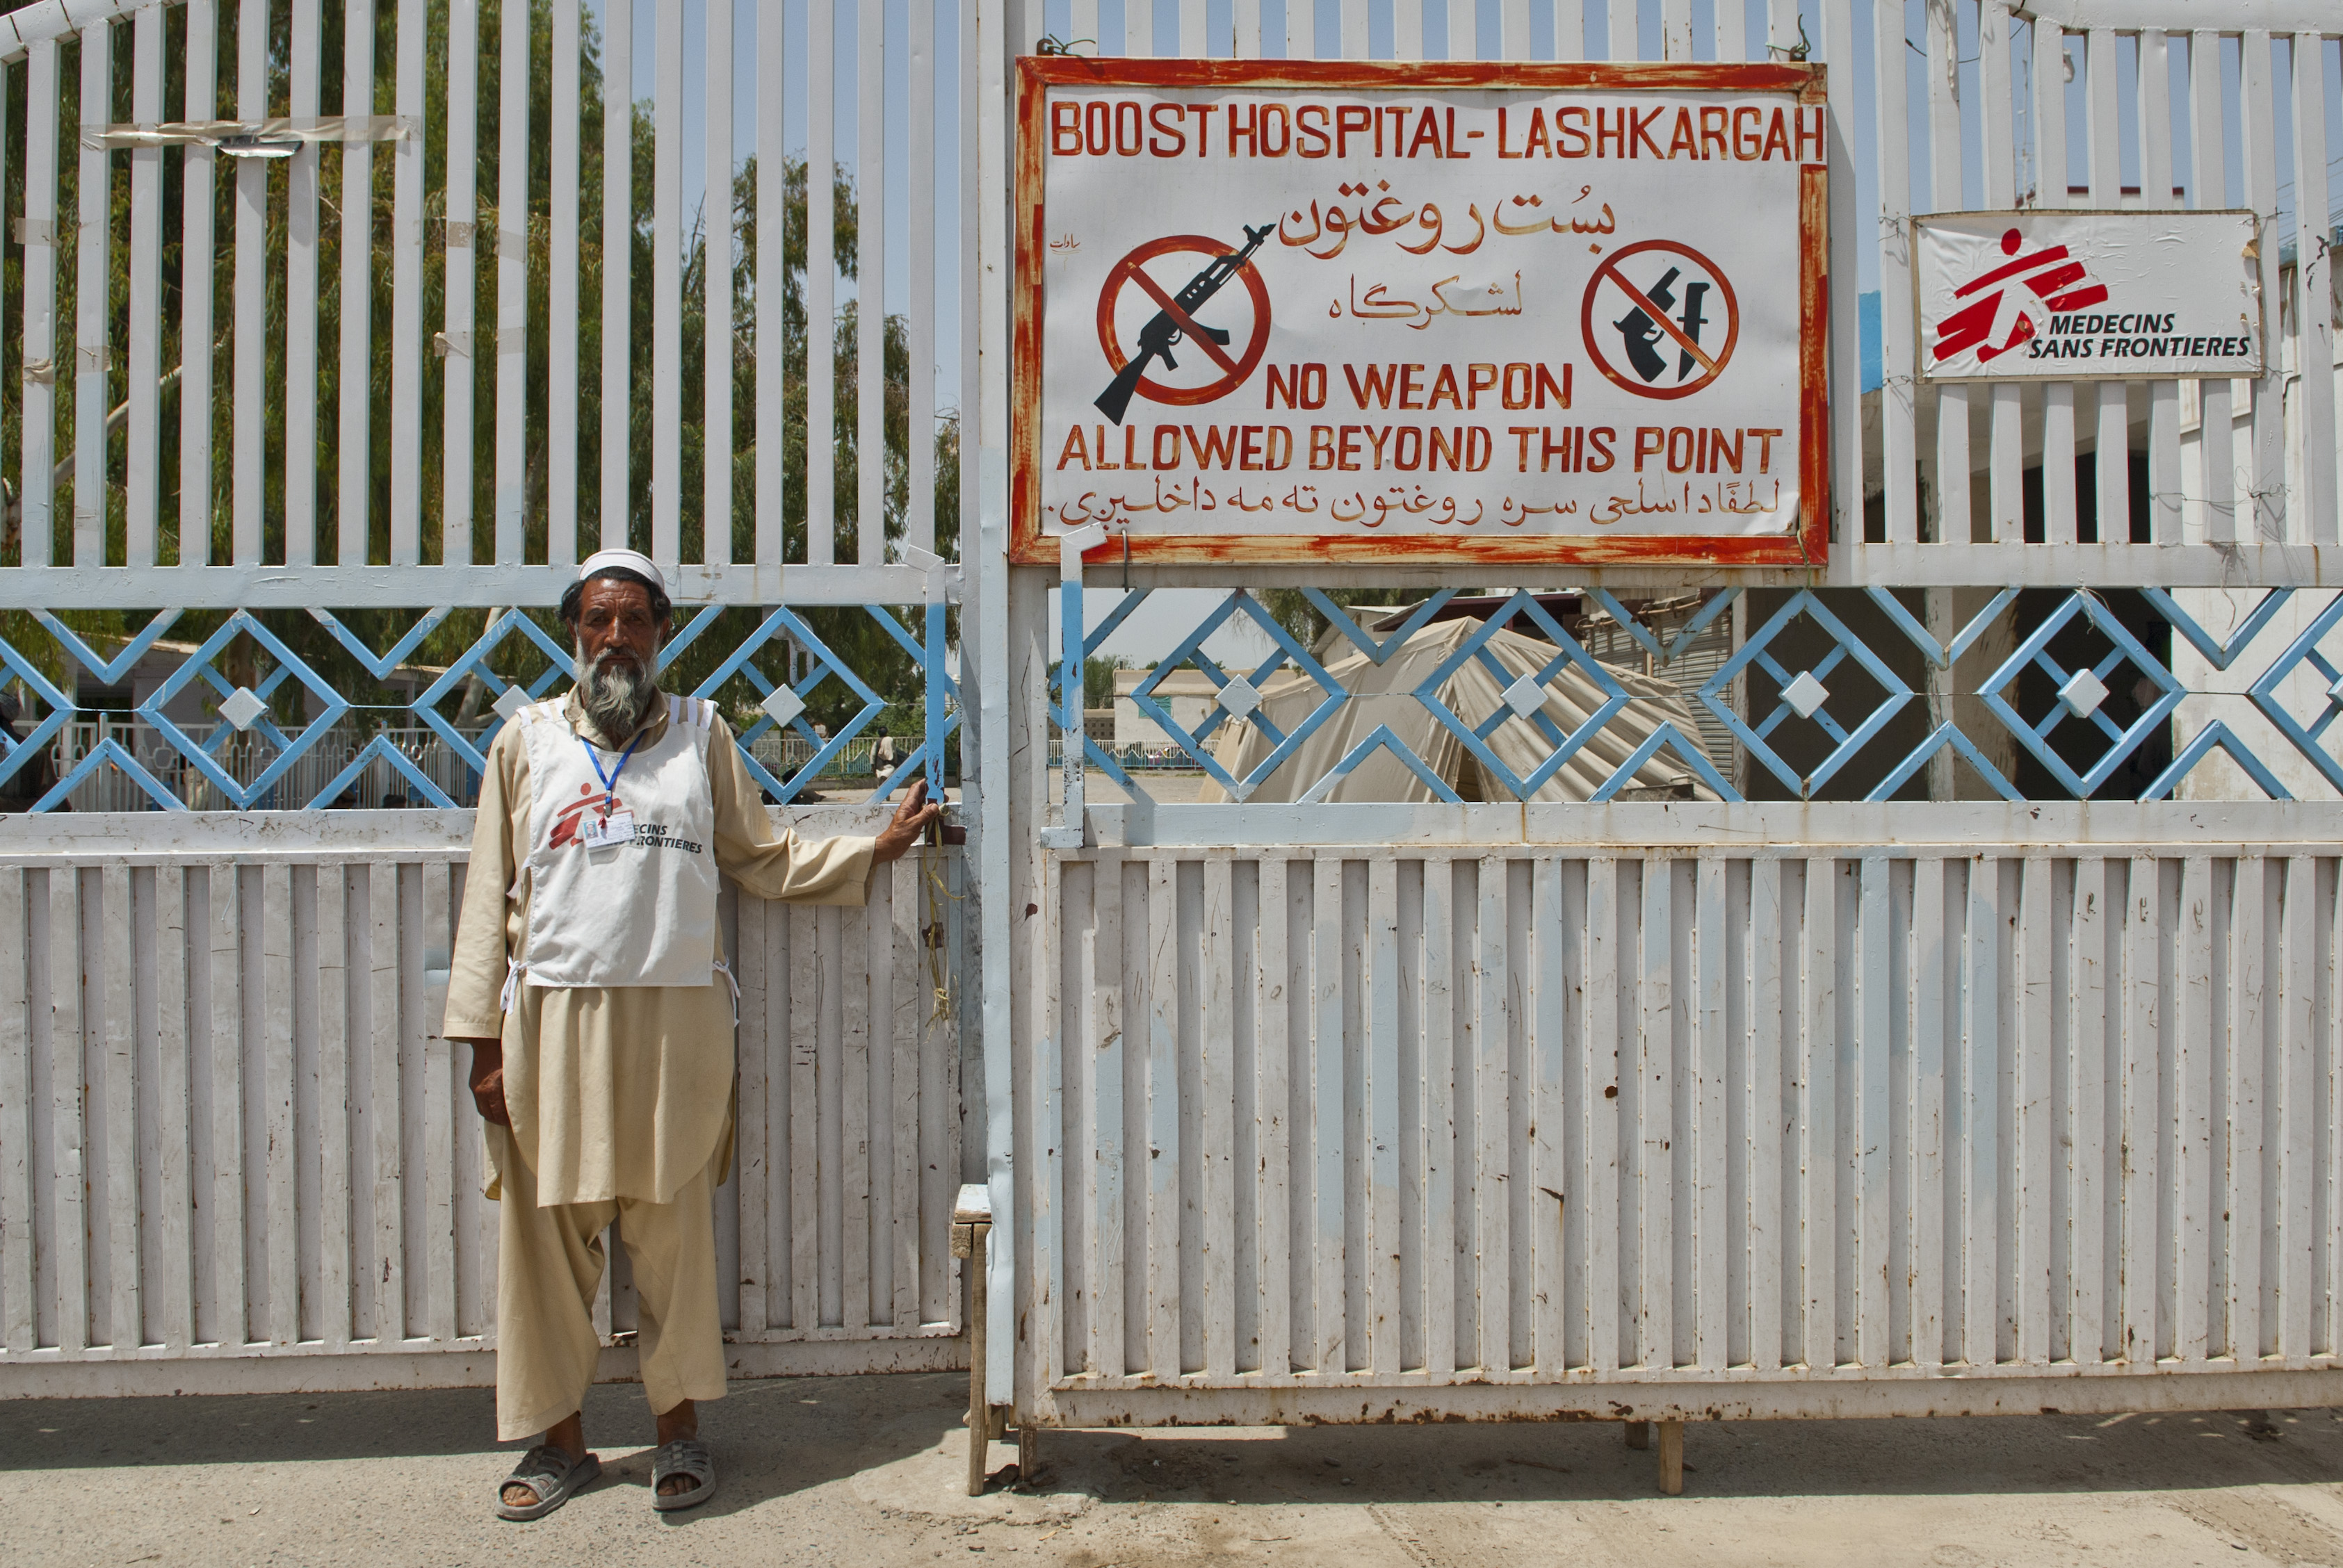 Eksibisi kondisi rumah sakit di medan perang ini gugah sisi humanismu